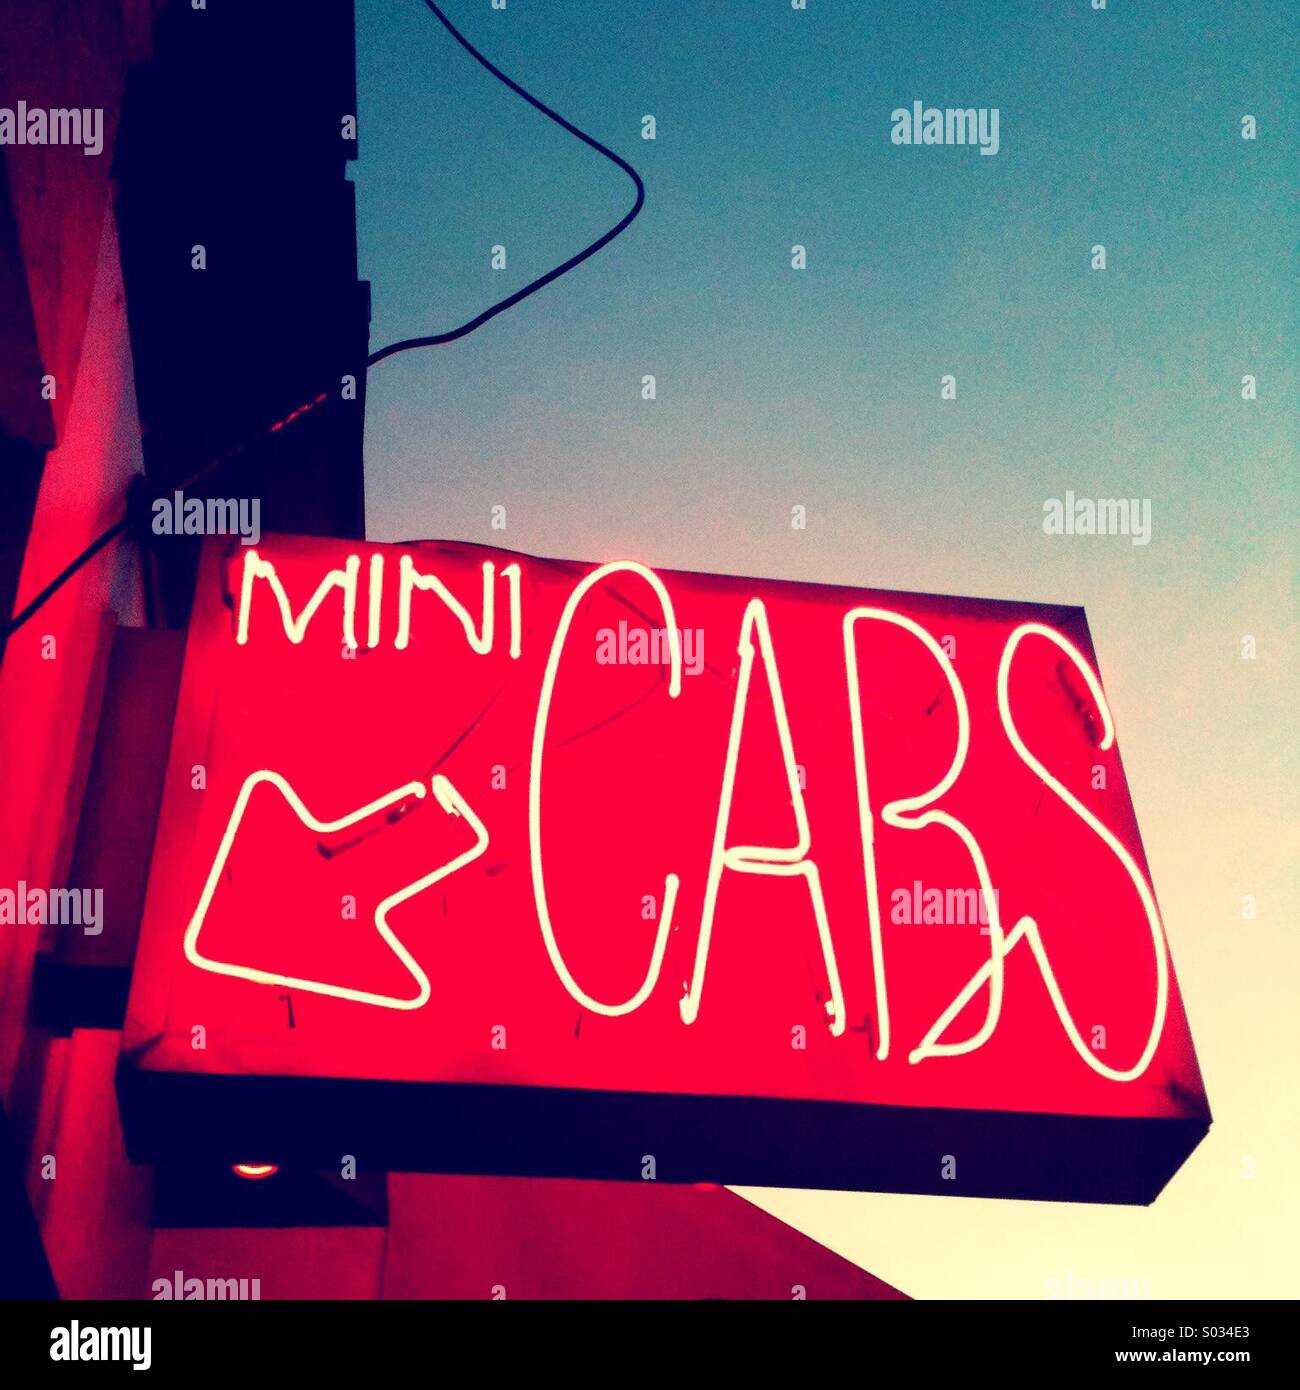 A Mini Cab Sign Stock Photo